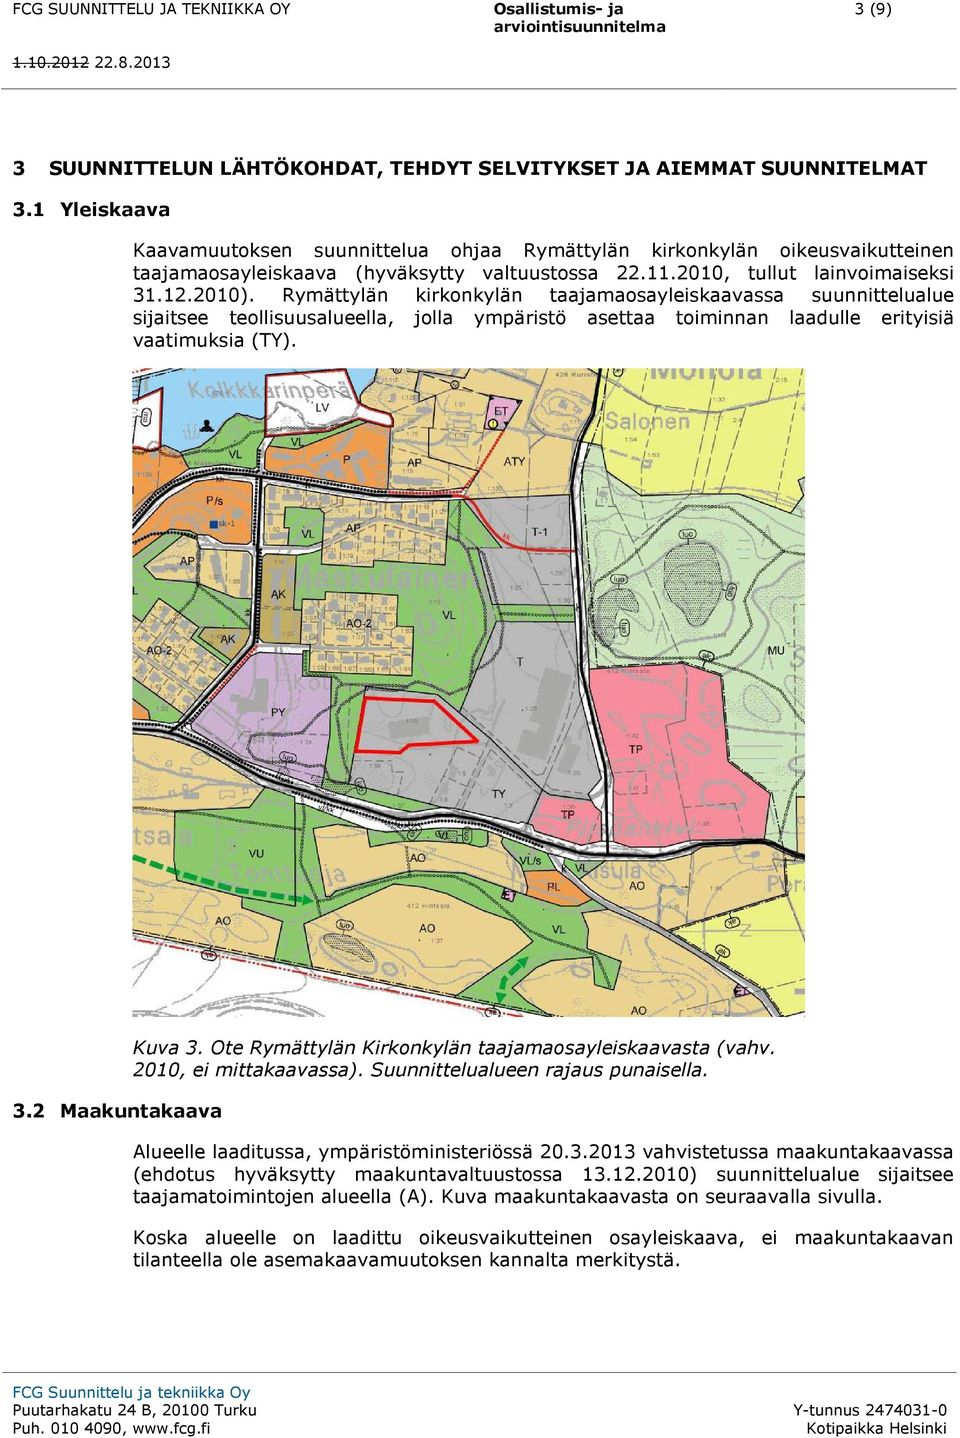 Rymättylän kirkonkylän taajamaosayleiskaavassa suunnittelualue sijaitsee teollisuusalueella, jolla ympäristö asettaa toiminnan laadulle erityisiä vaatimuksia (TY). 3.2 Maakuntakaava Kuva 3.